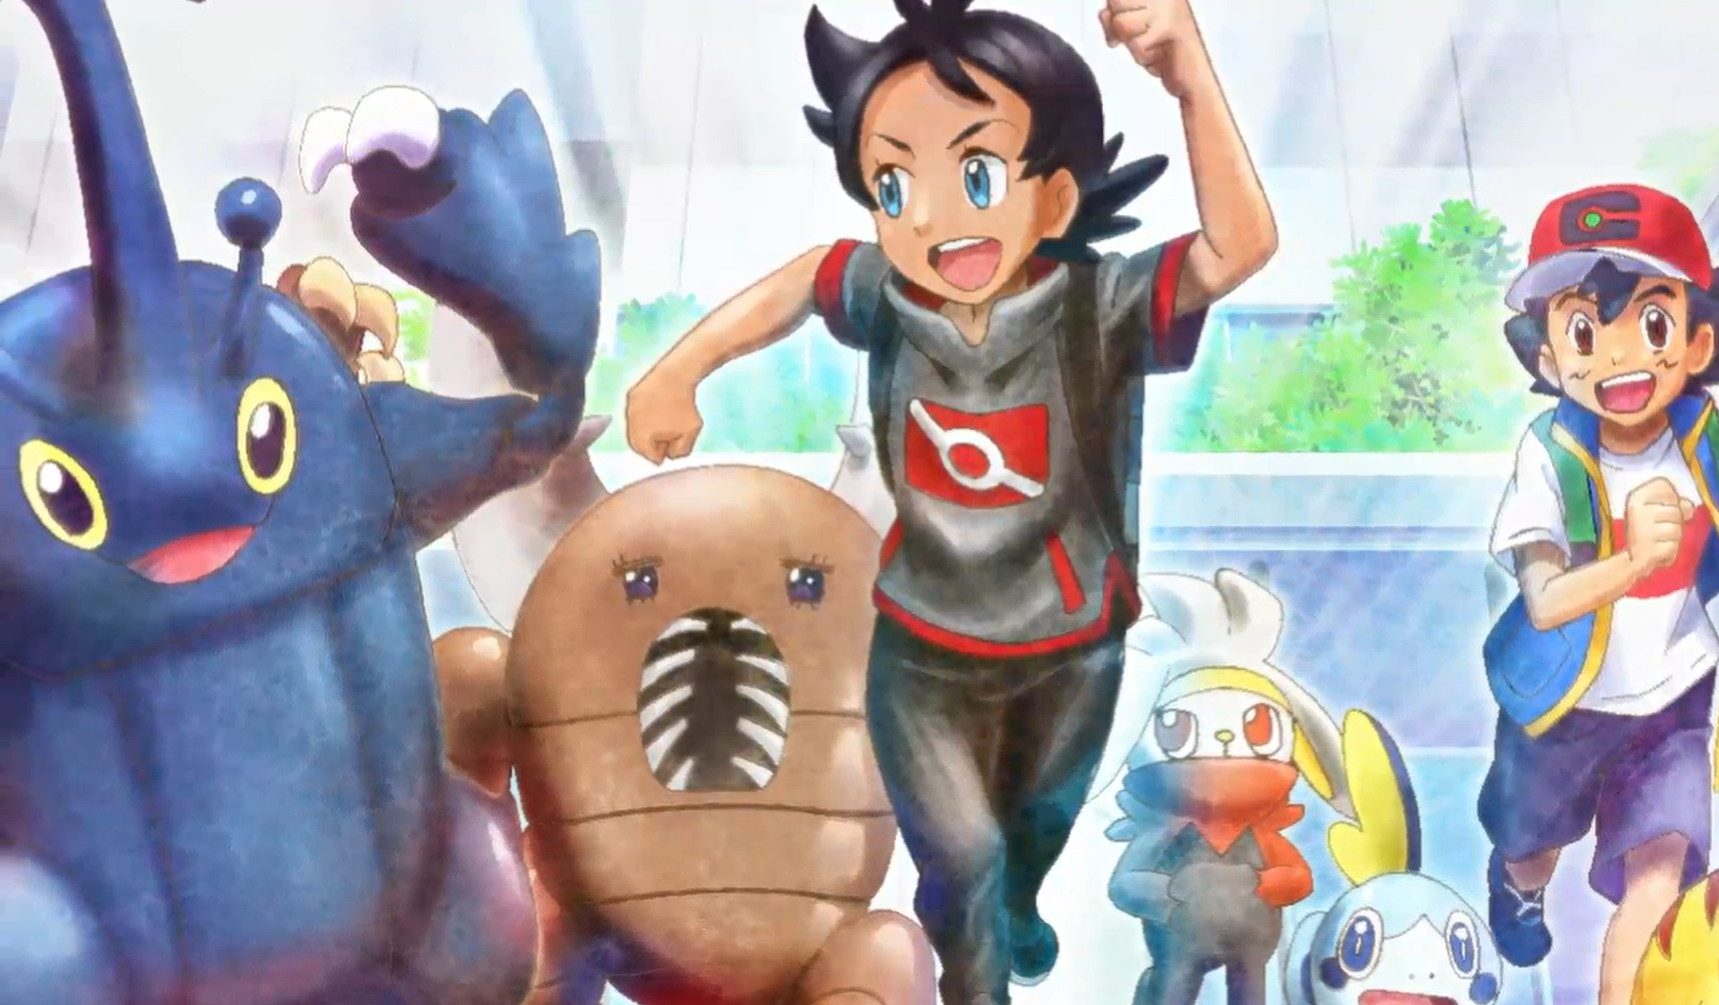 Personagem obtém um poderoso Pokémon inseto em episódio recente de Pokémon Journeys